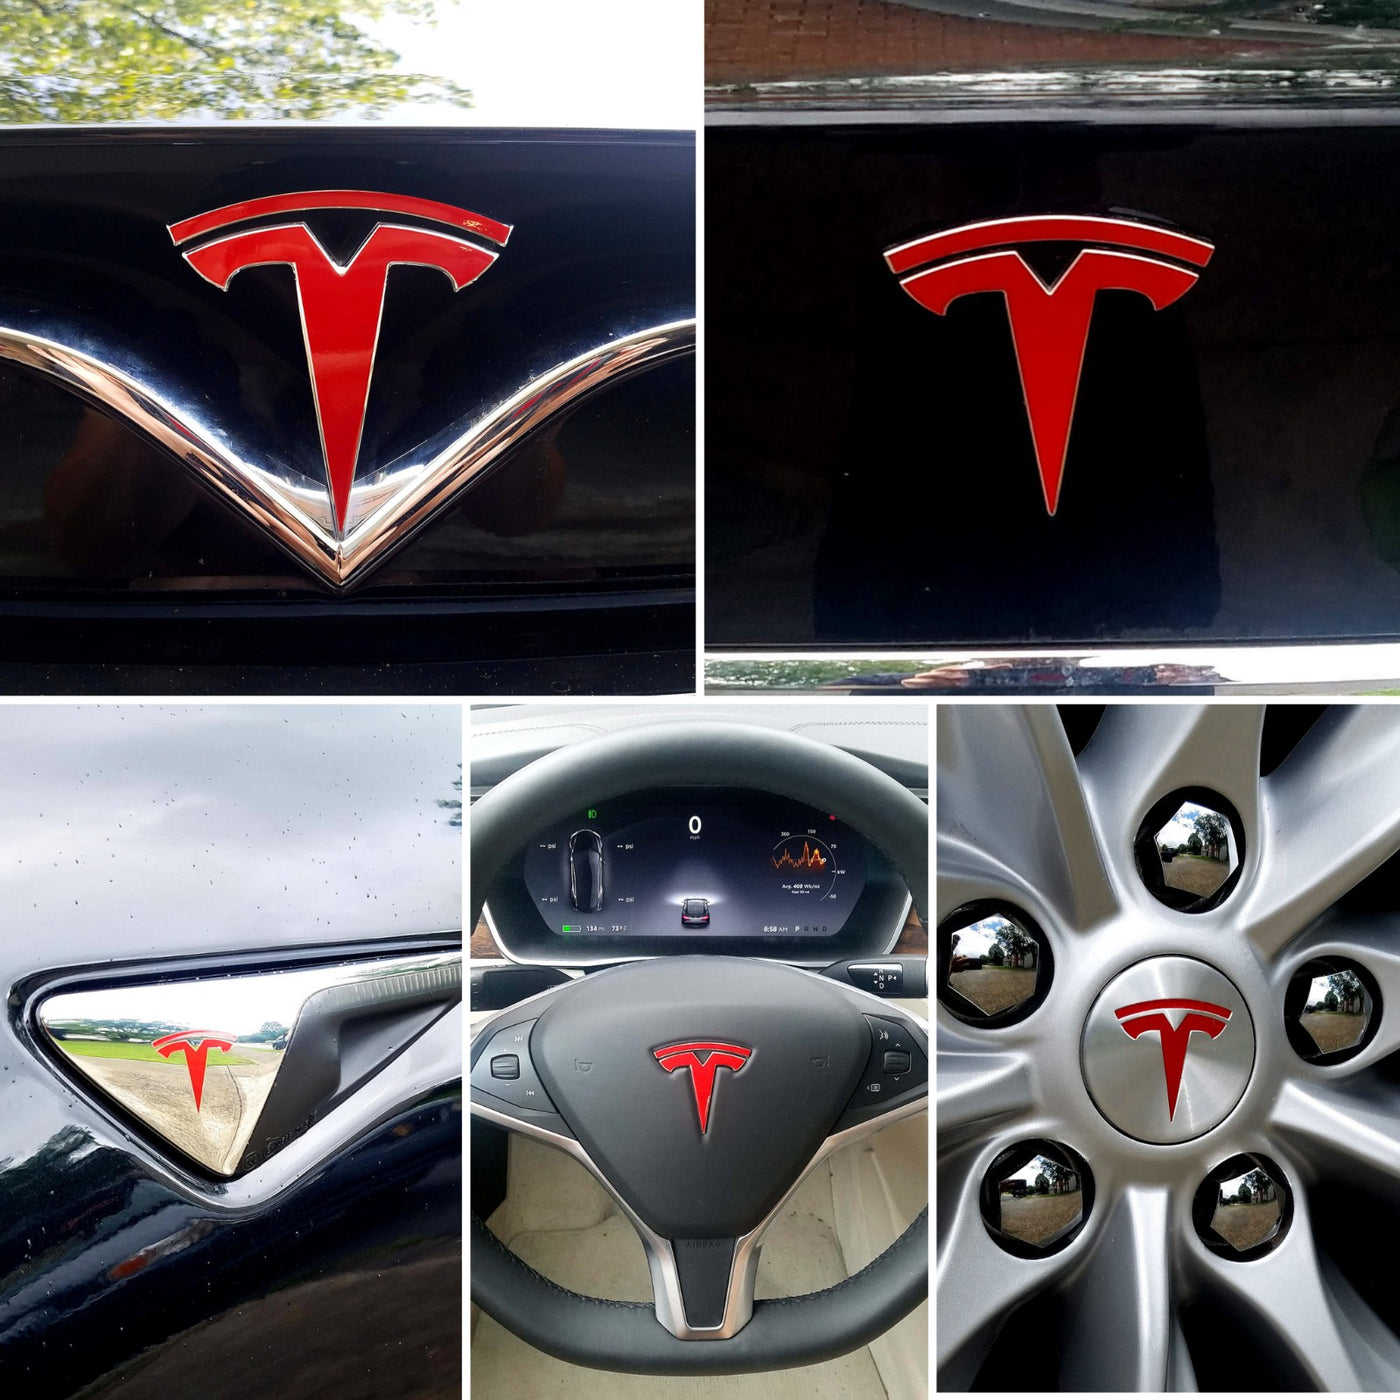 IPG for Tesla Model 3 Model Y Door Handle Decal India